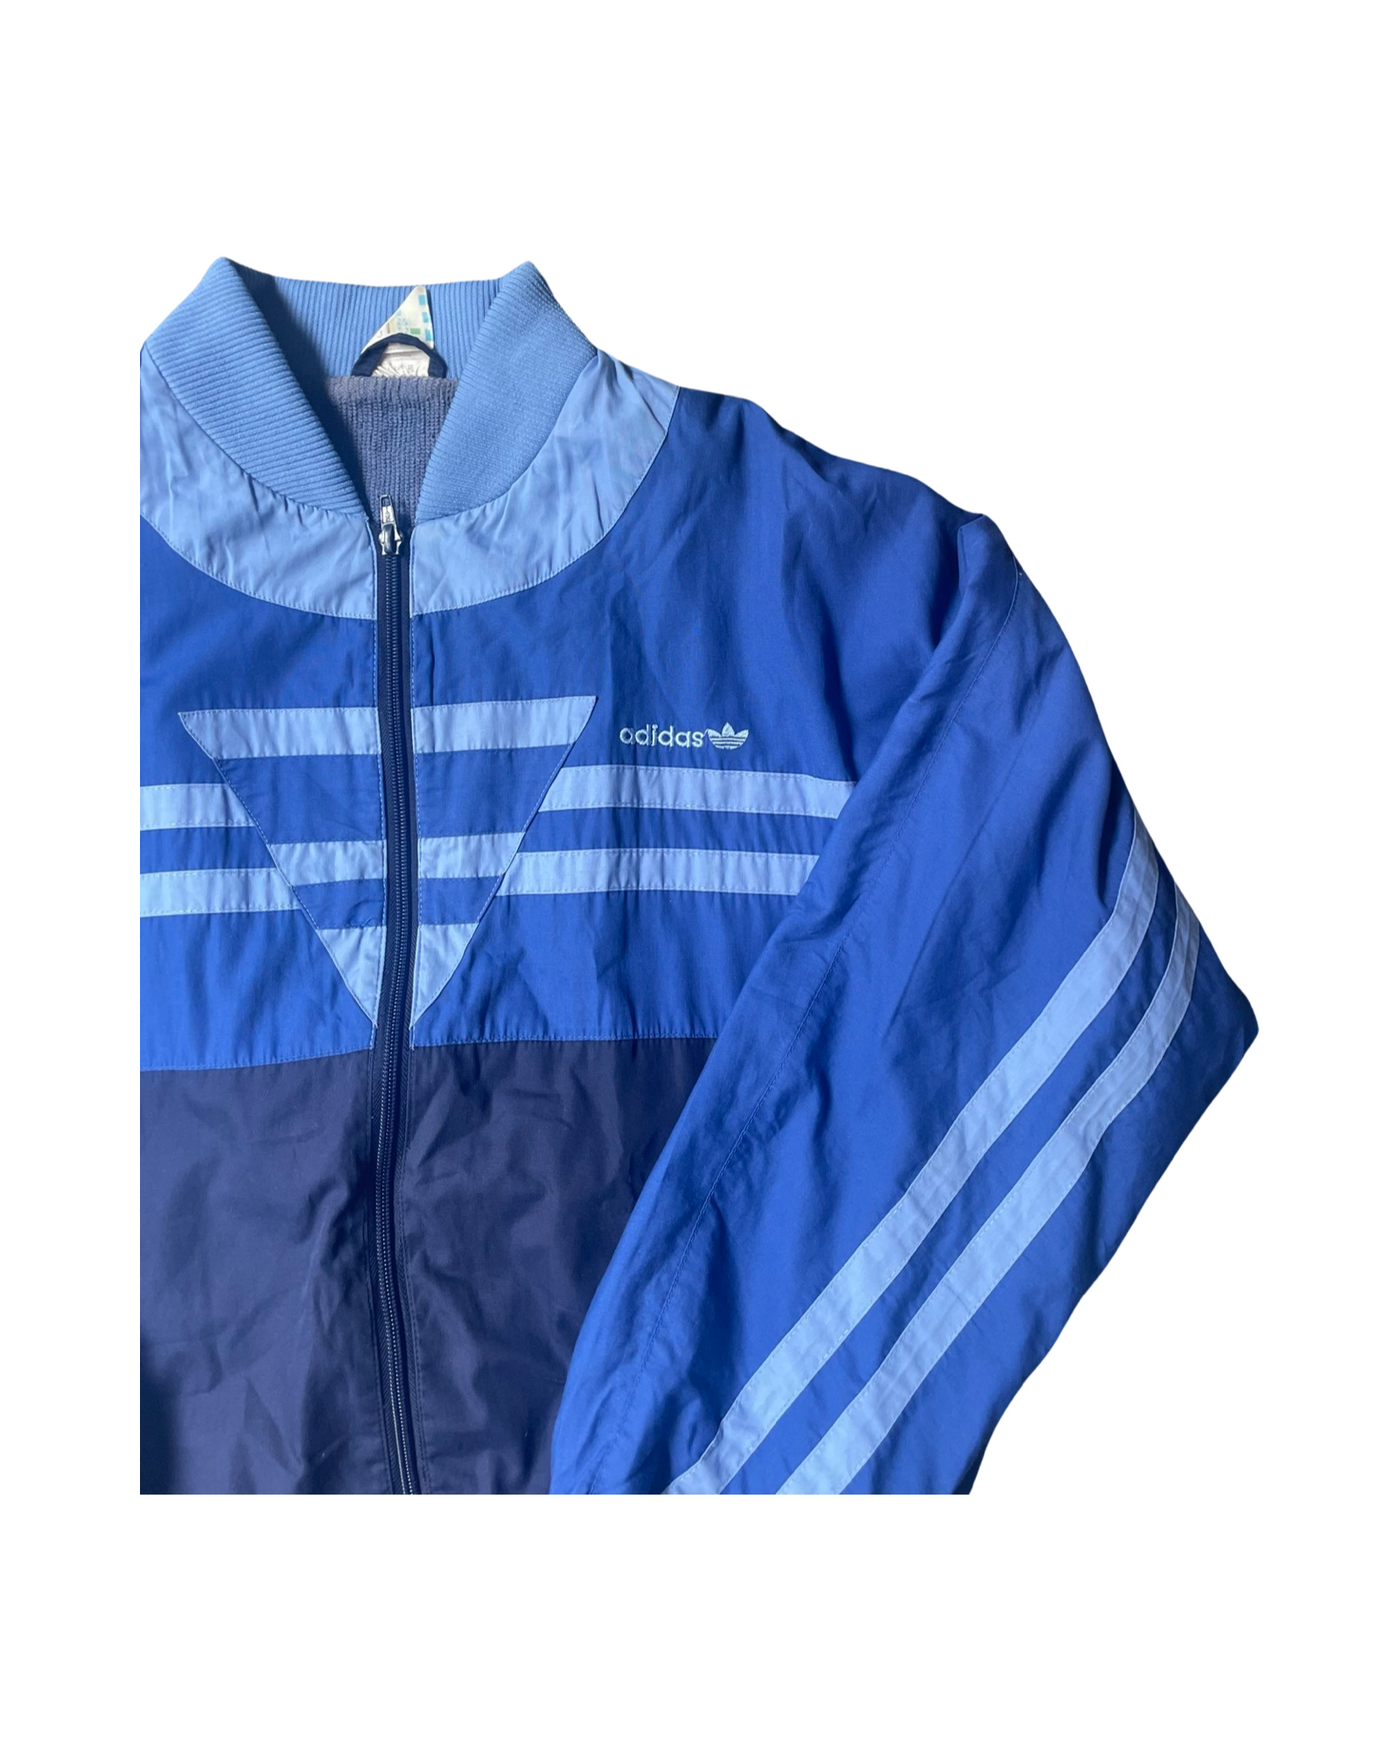 Vintage Adidas 80’s Jacket